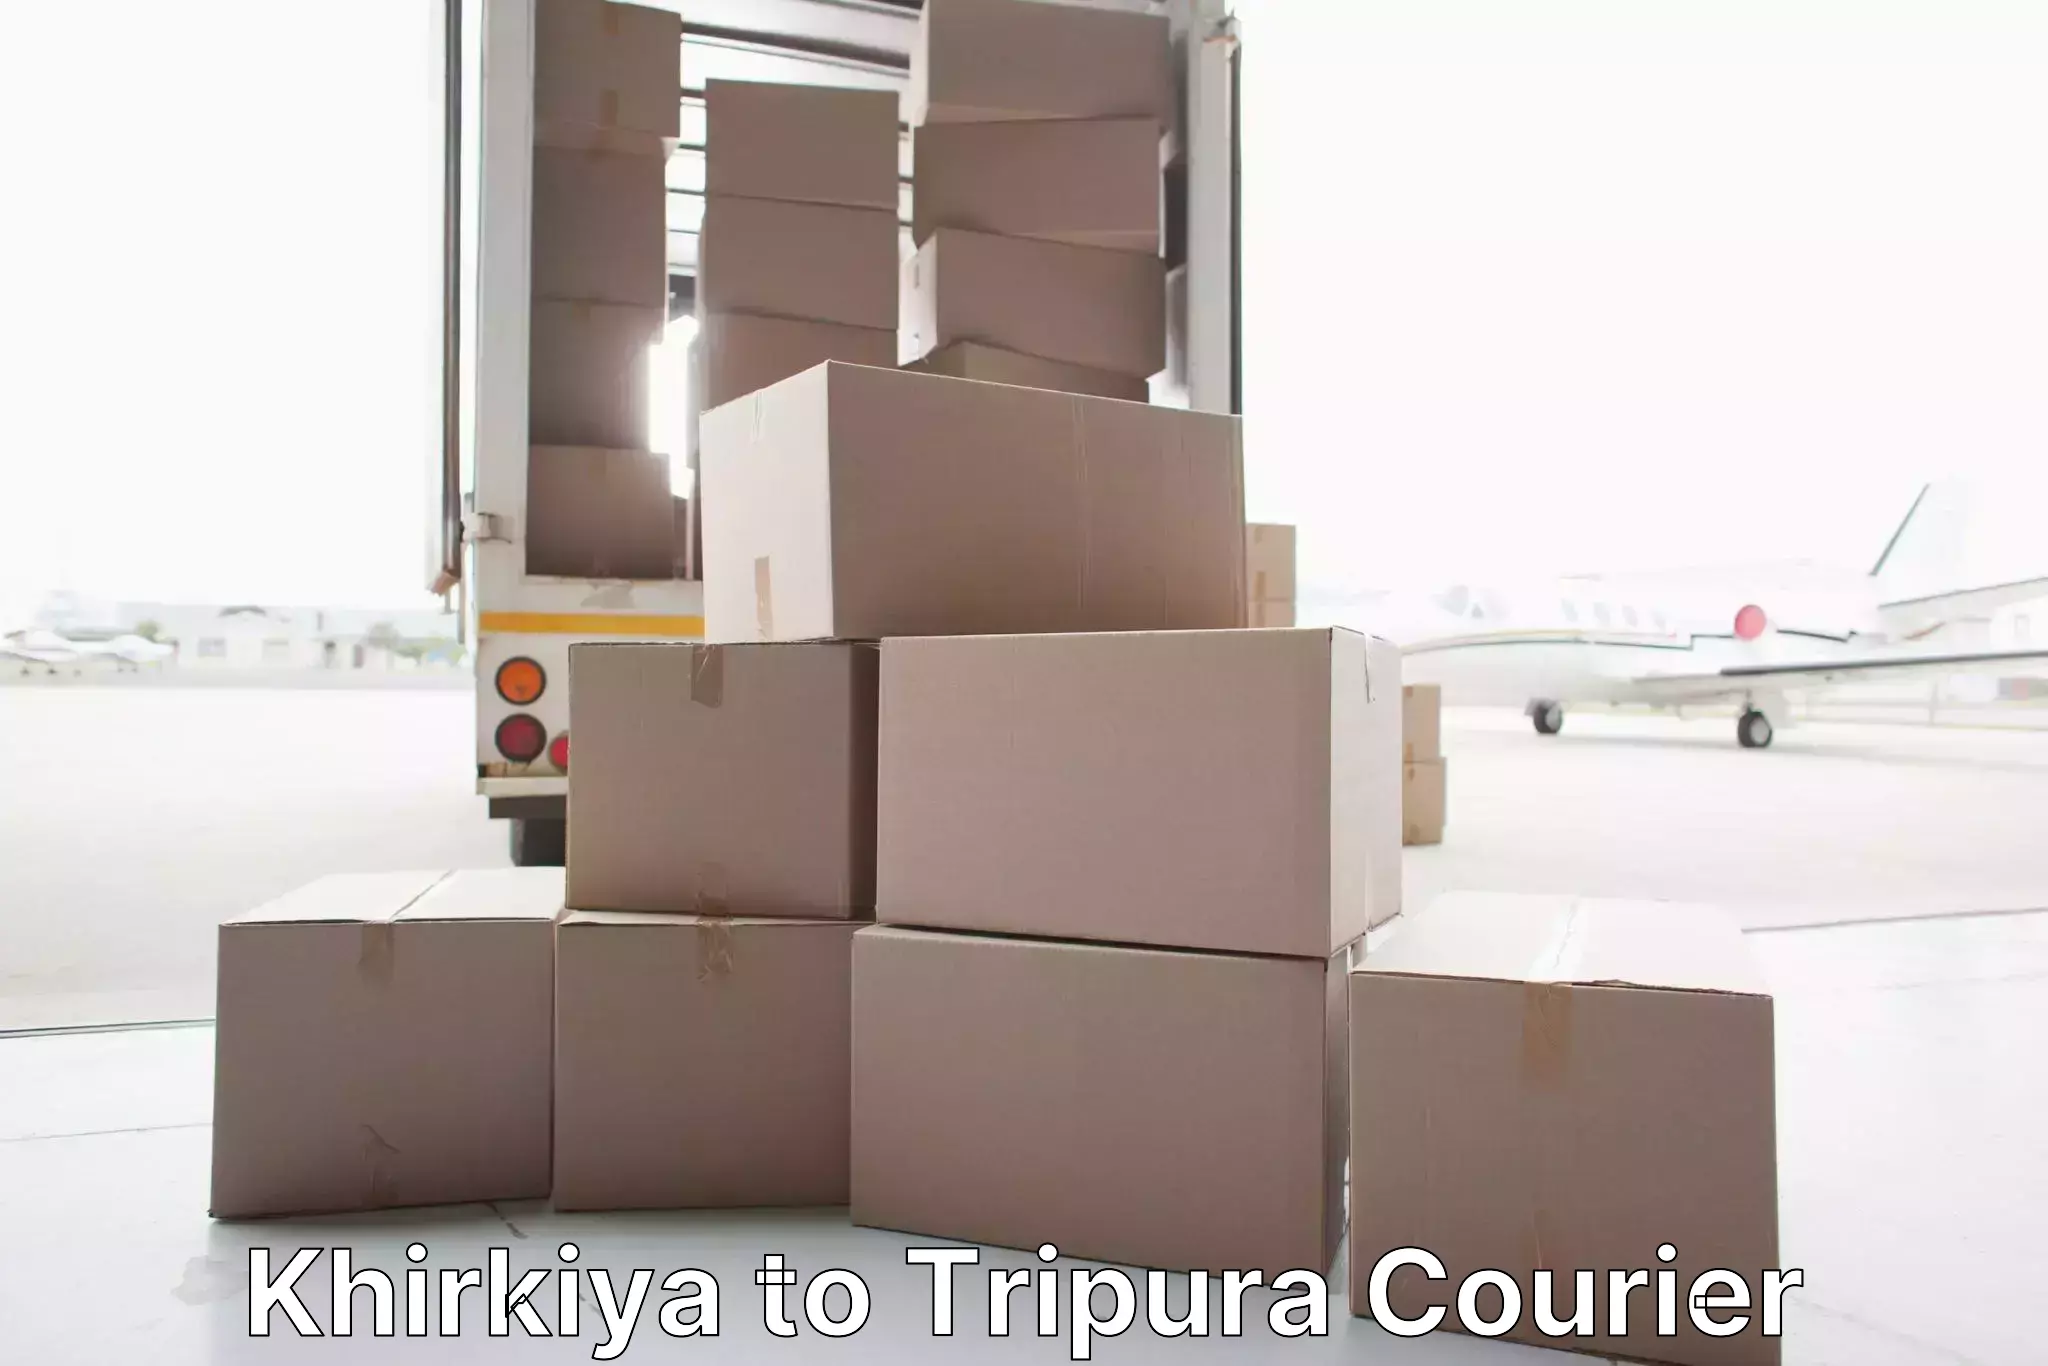 Full-service relocation Khirkiya to Tripura